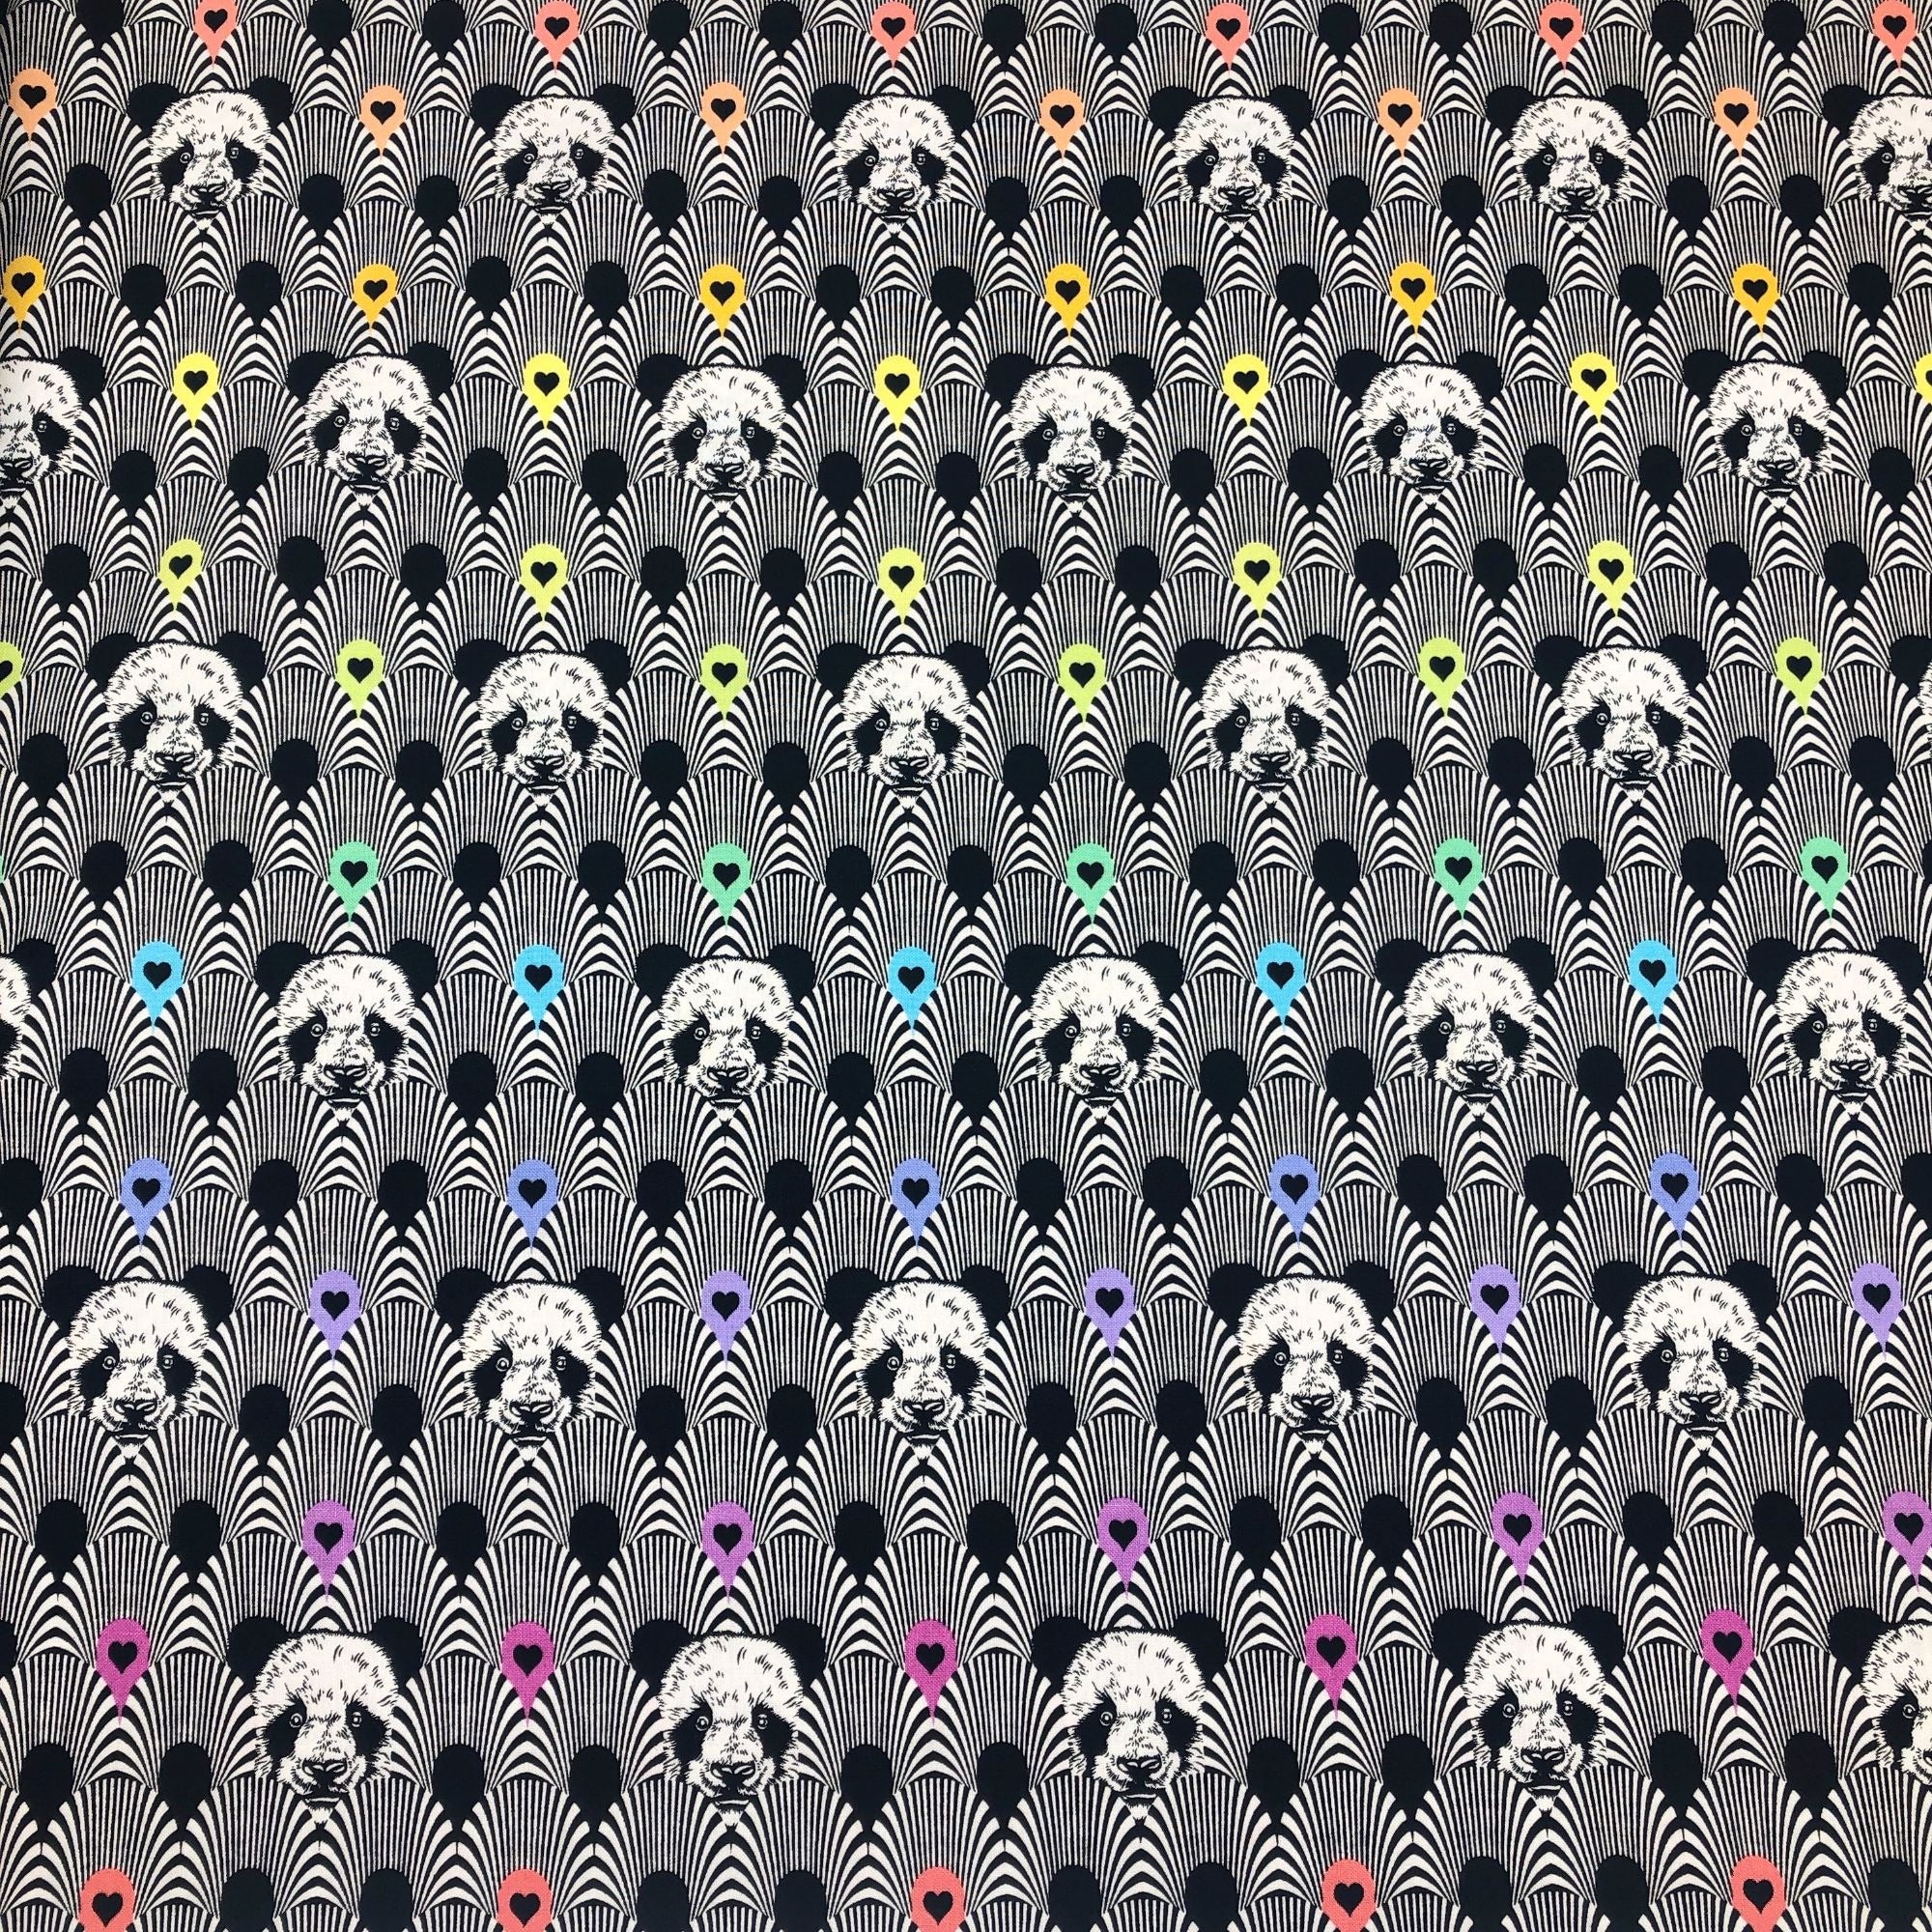 Tula Pink for Free Spirit Linework Pandanonium in Ink Pandas Cotton Fabric